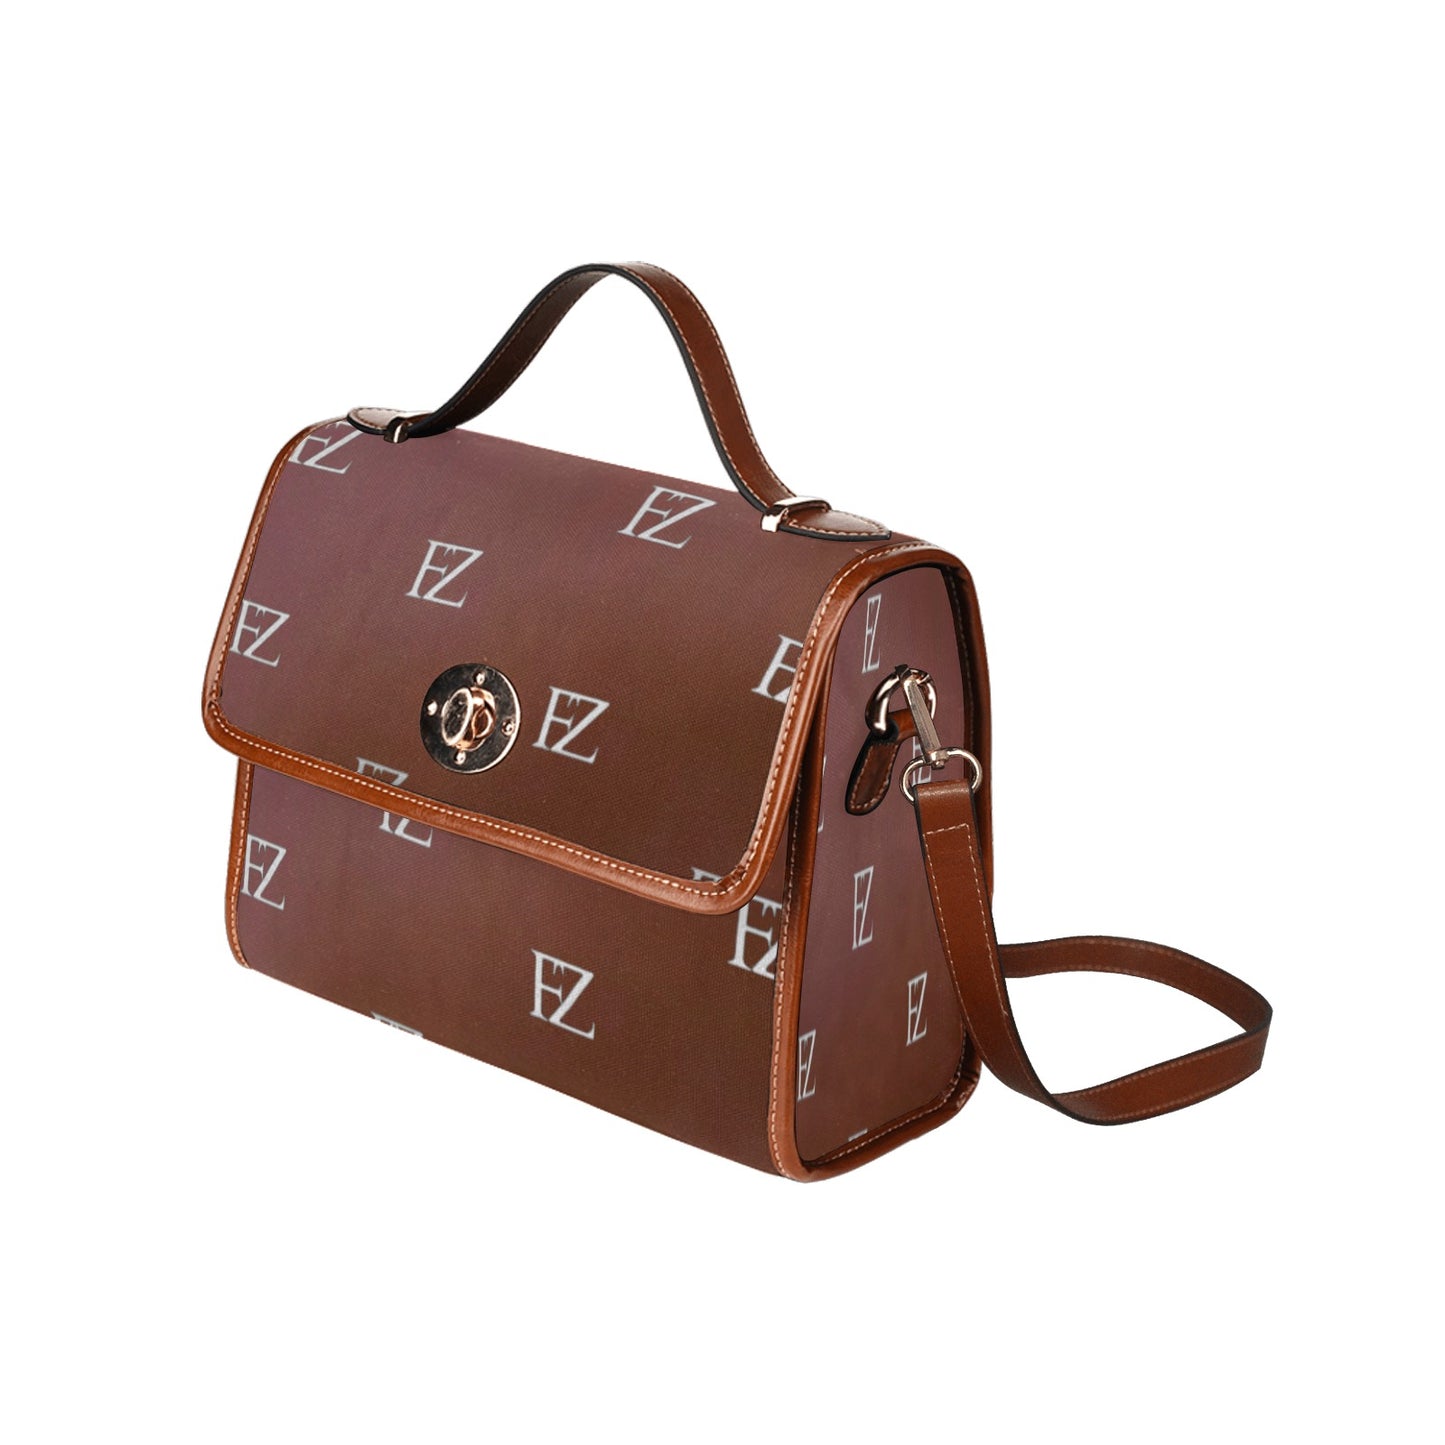 fz original handbag - brown 2